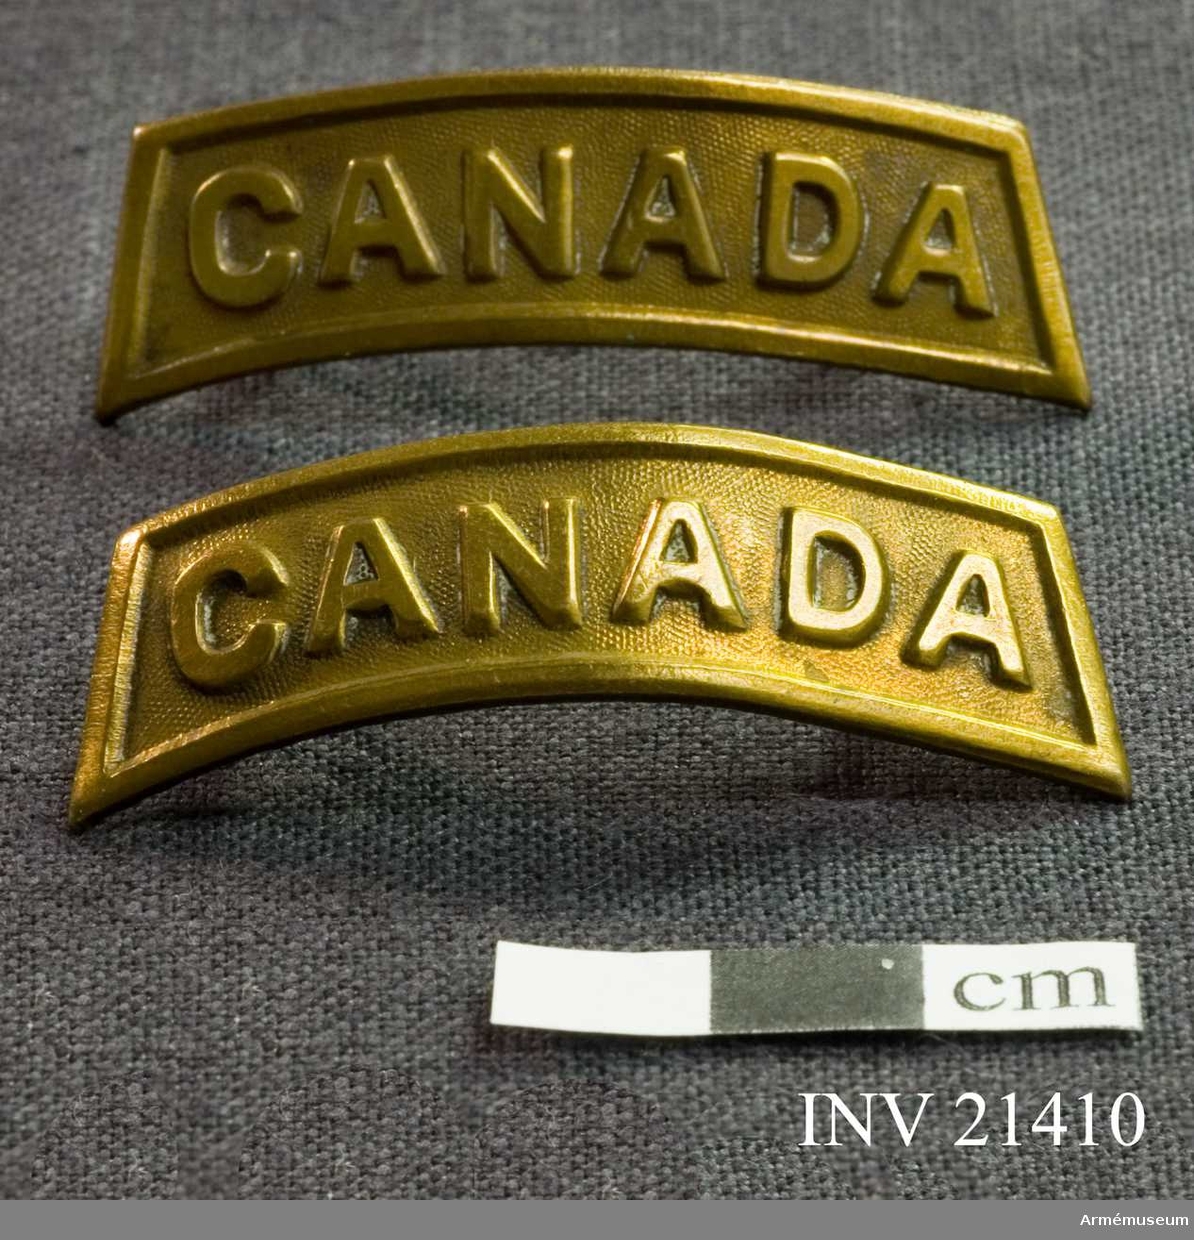 Grupp C I.
Axelmärke CANADA.
För officer vid Royal Canadian Horse Artillery, Kanada.